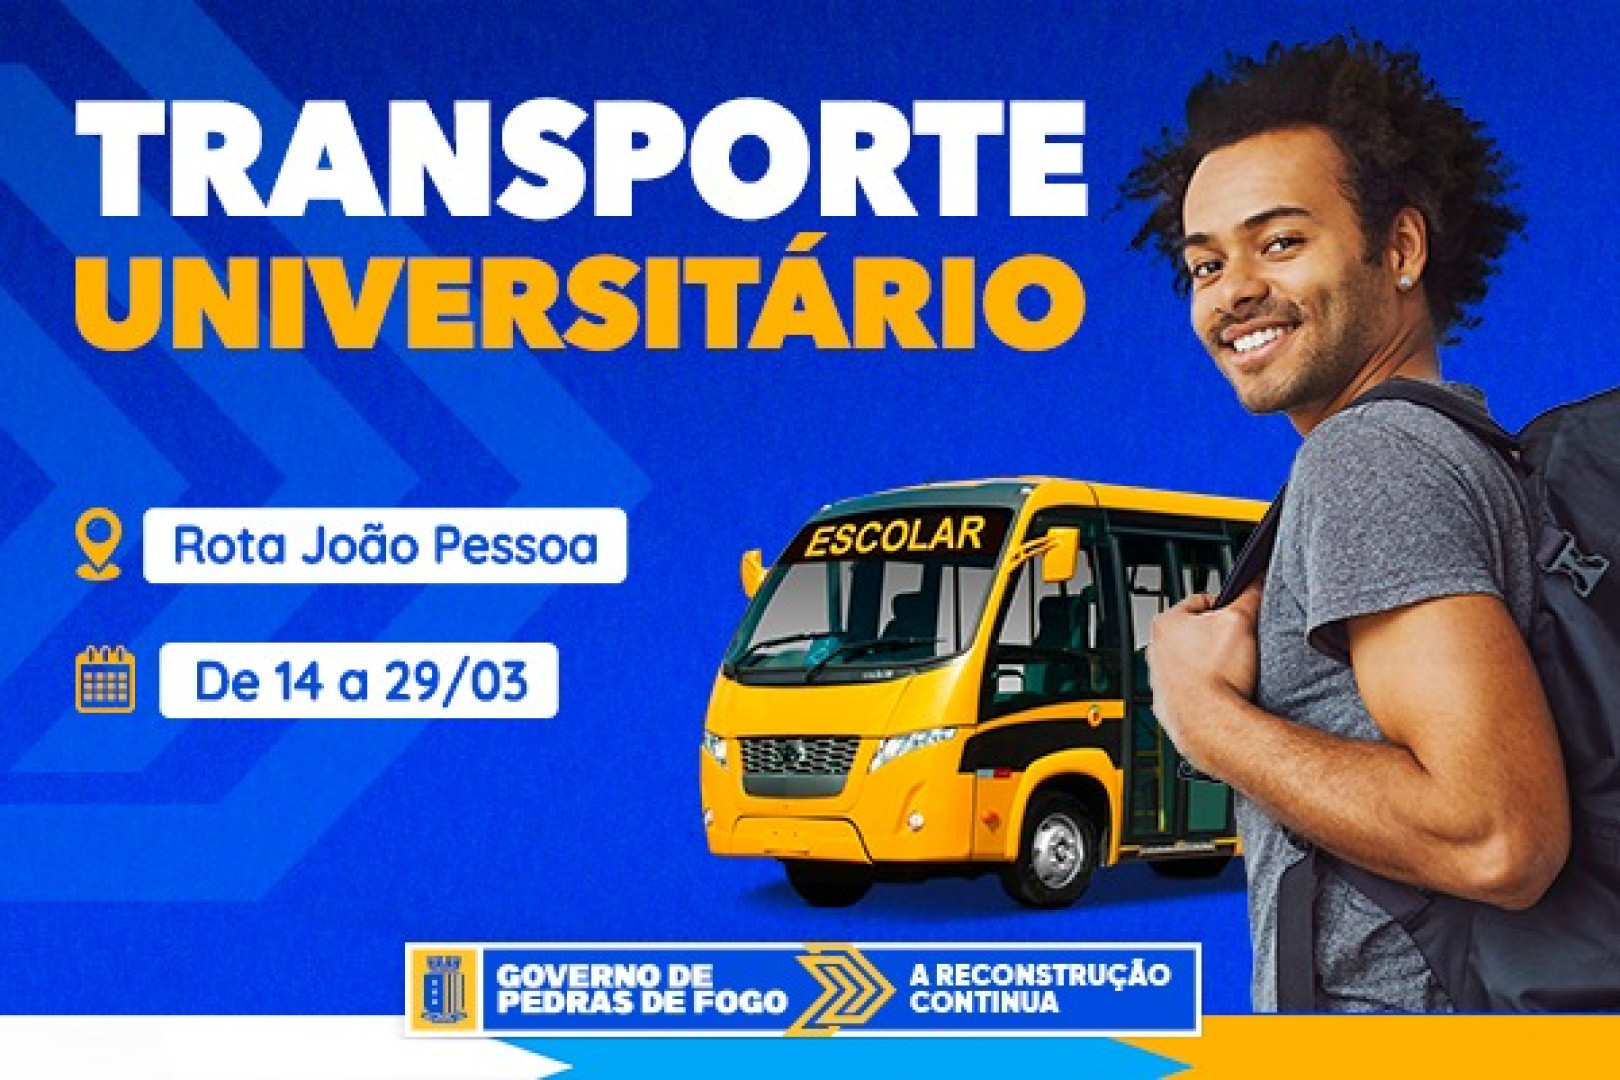 Transporte Universitário: Inscrições Abertas para Rotas em João Pessoa!